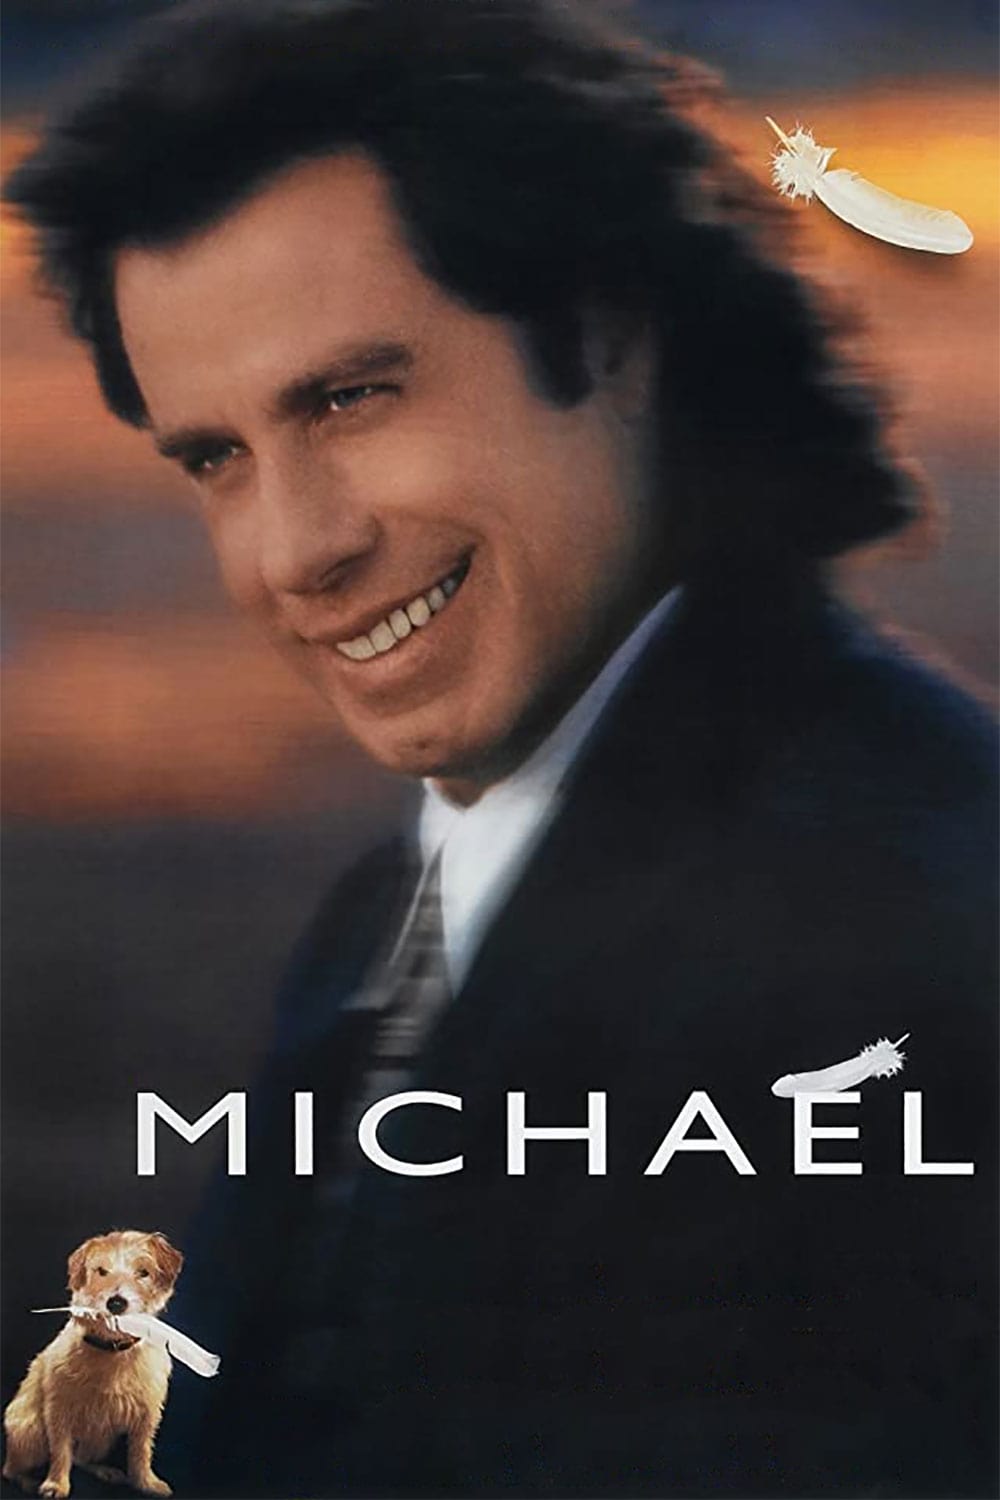 Plakat von "Michael"